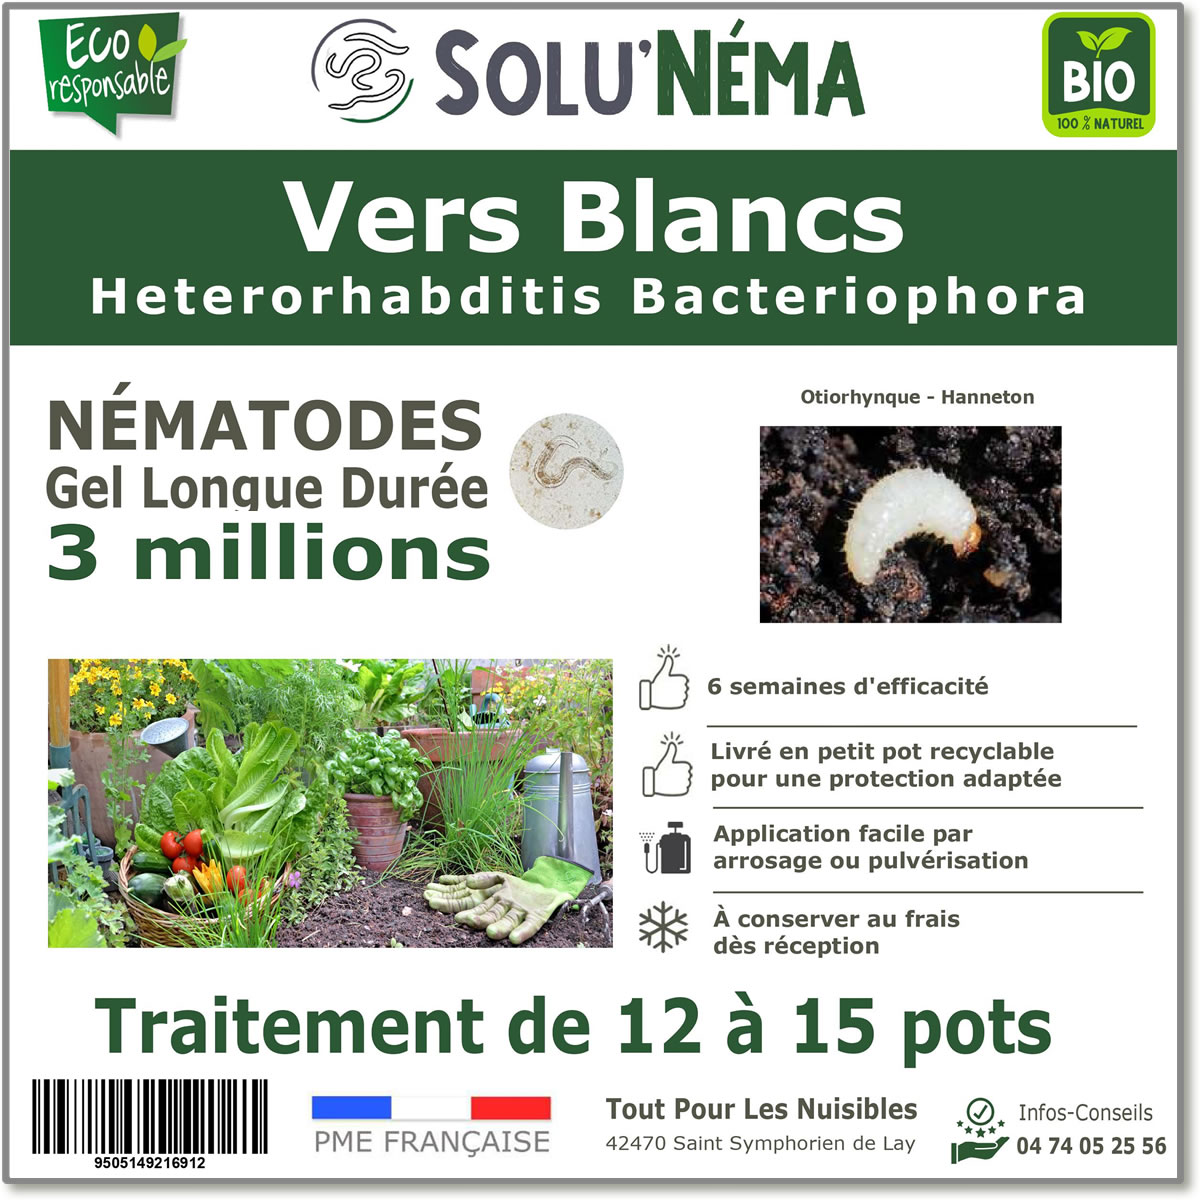 Nématodes (HB) Solunema pour Les vers blancx - otiorhinque - hanneton 3 millions SF